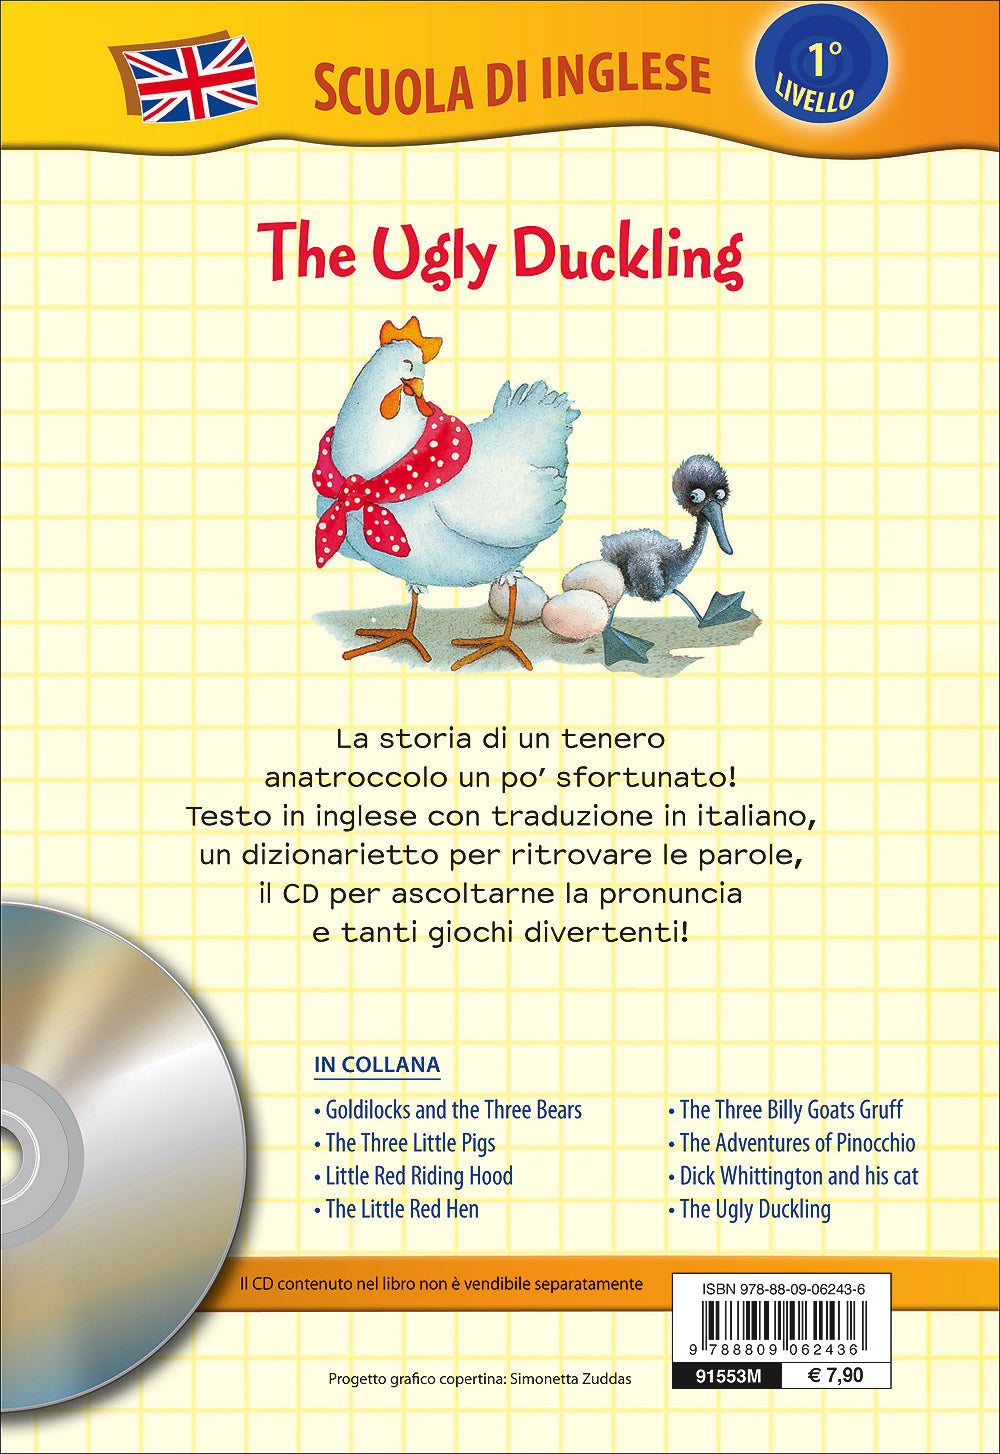 The Ugly Duckling + CD::Il brutto anatroccolo - Con traduzione e dizionario!